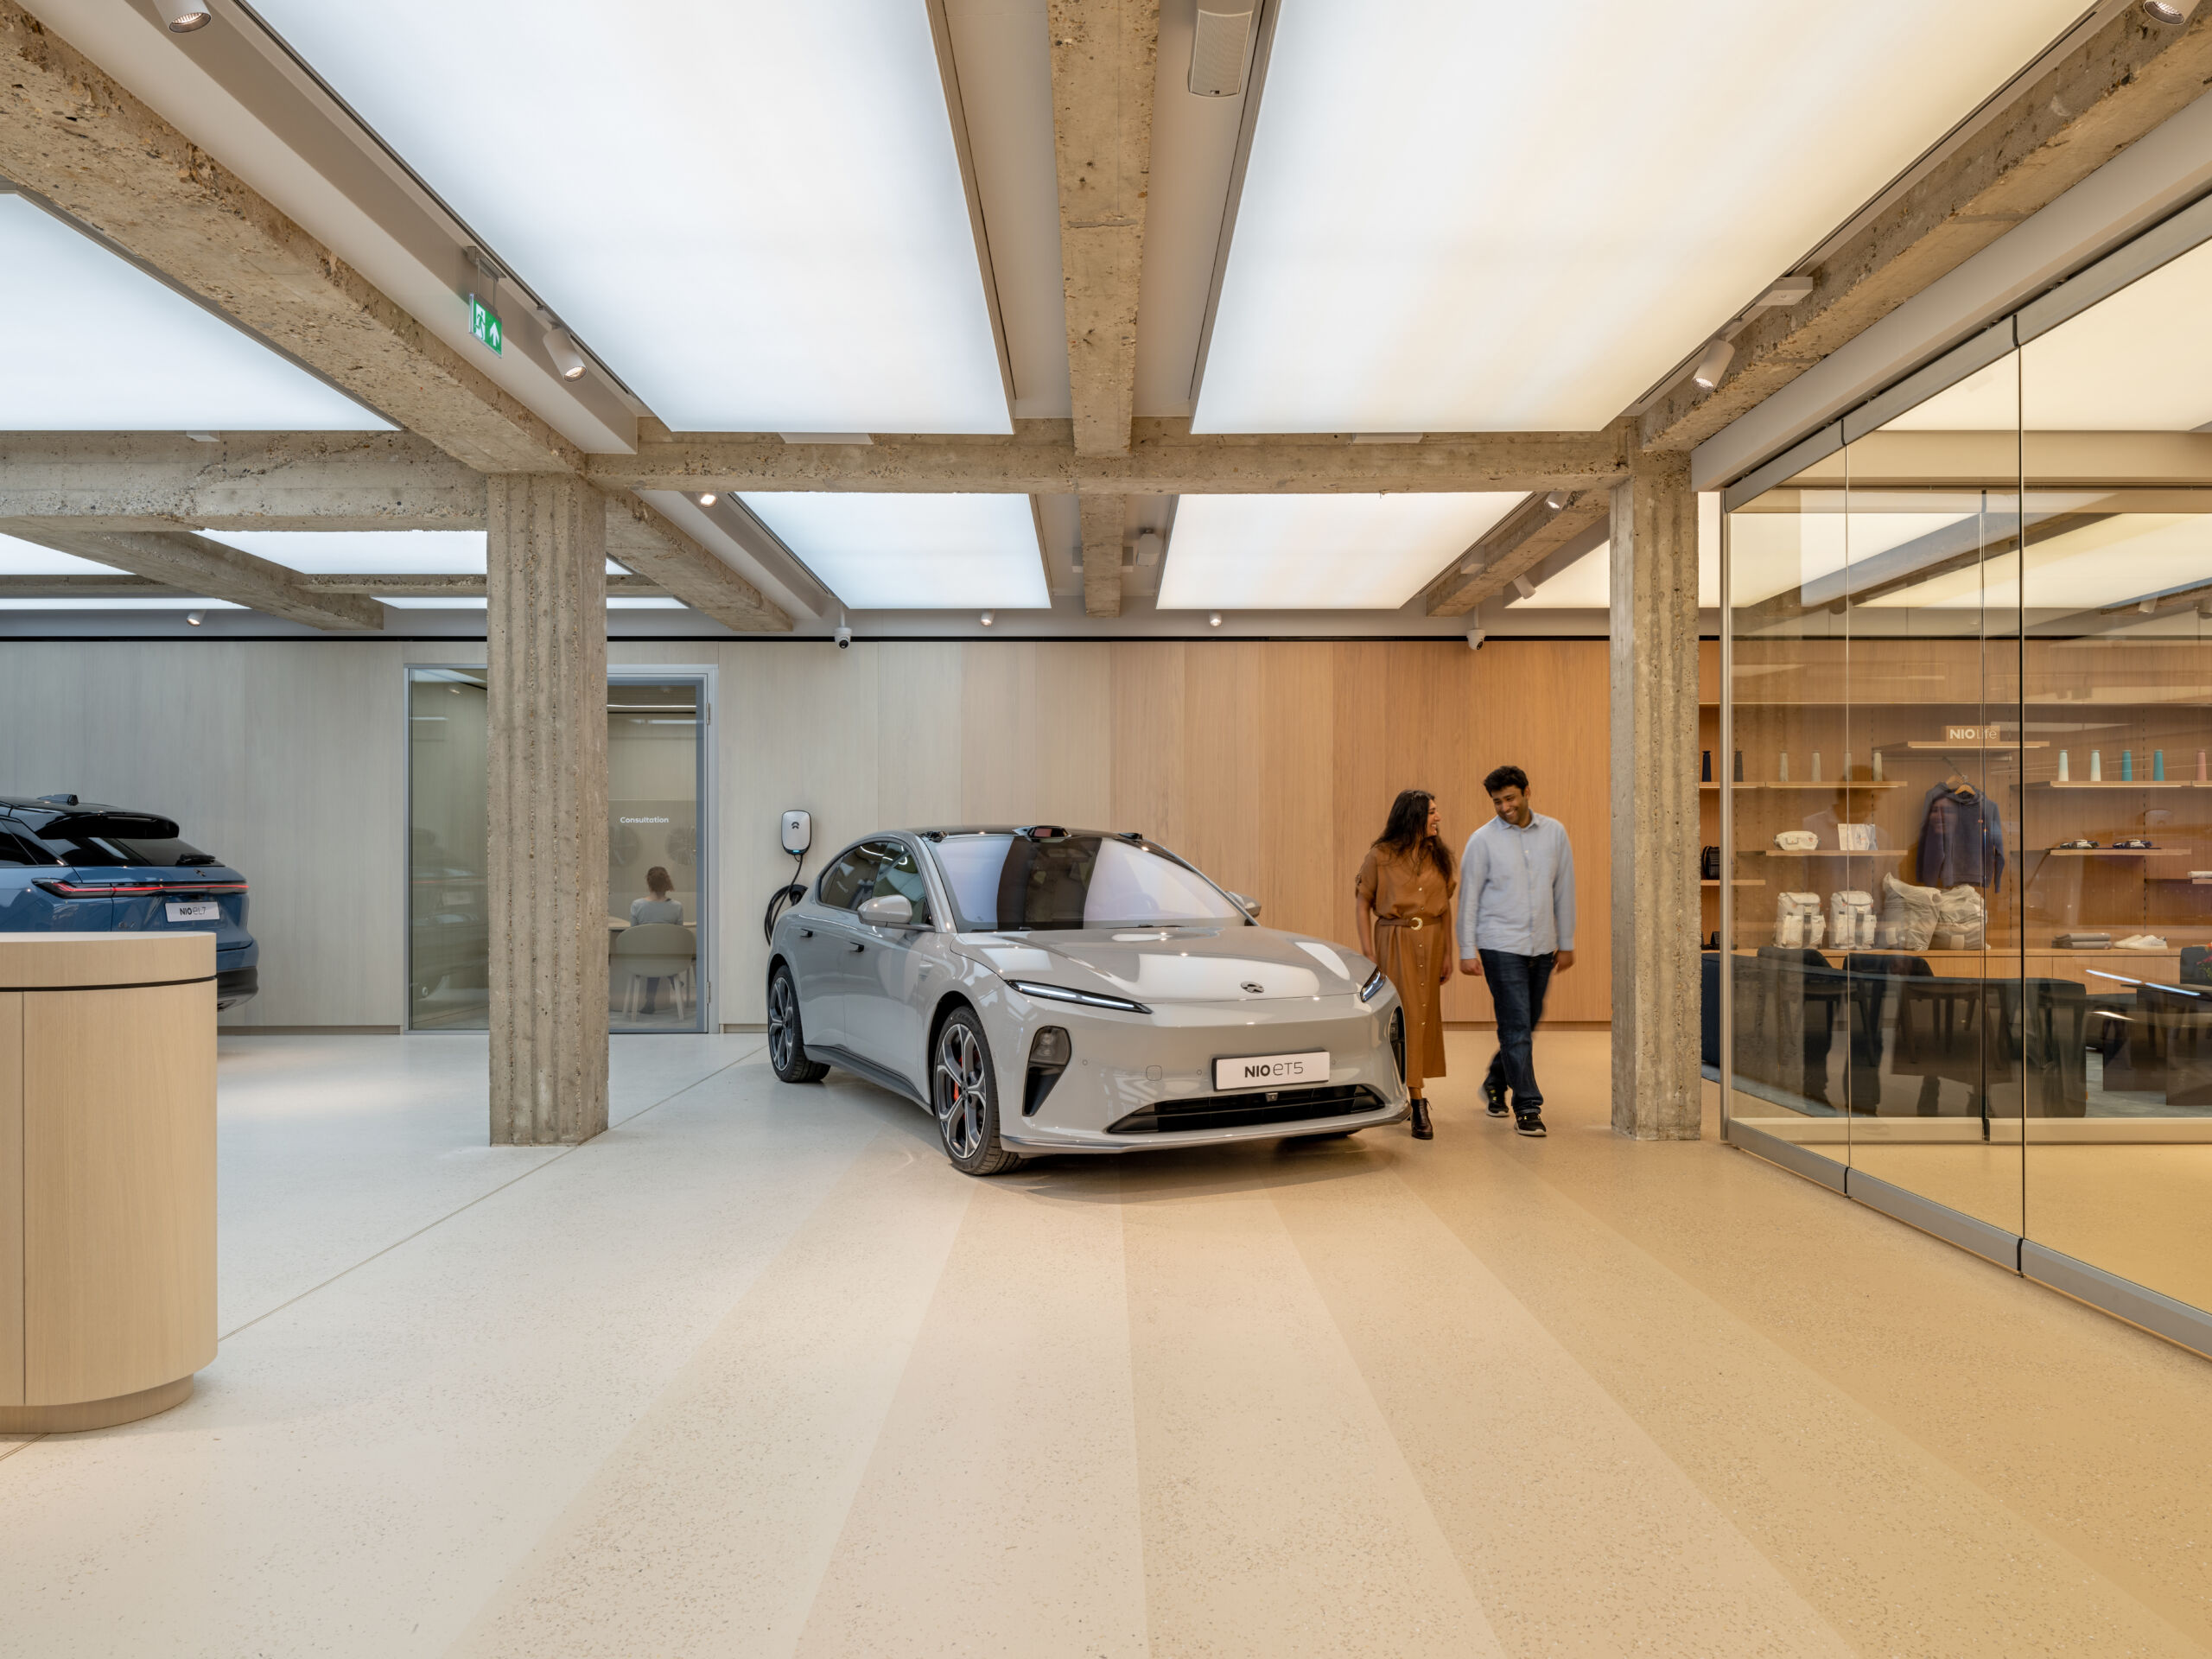 De showroom van NIO, waarin een grijze, elektrische auto getoond wordt